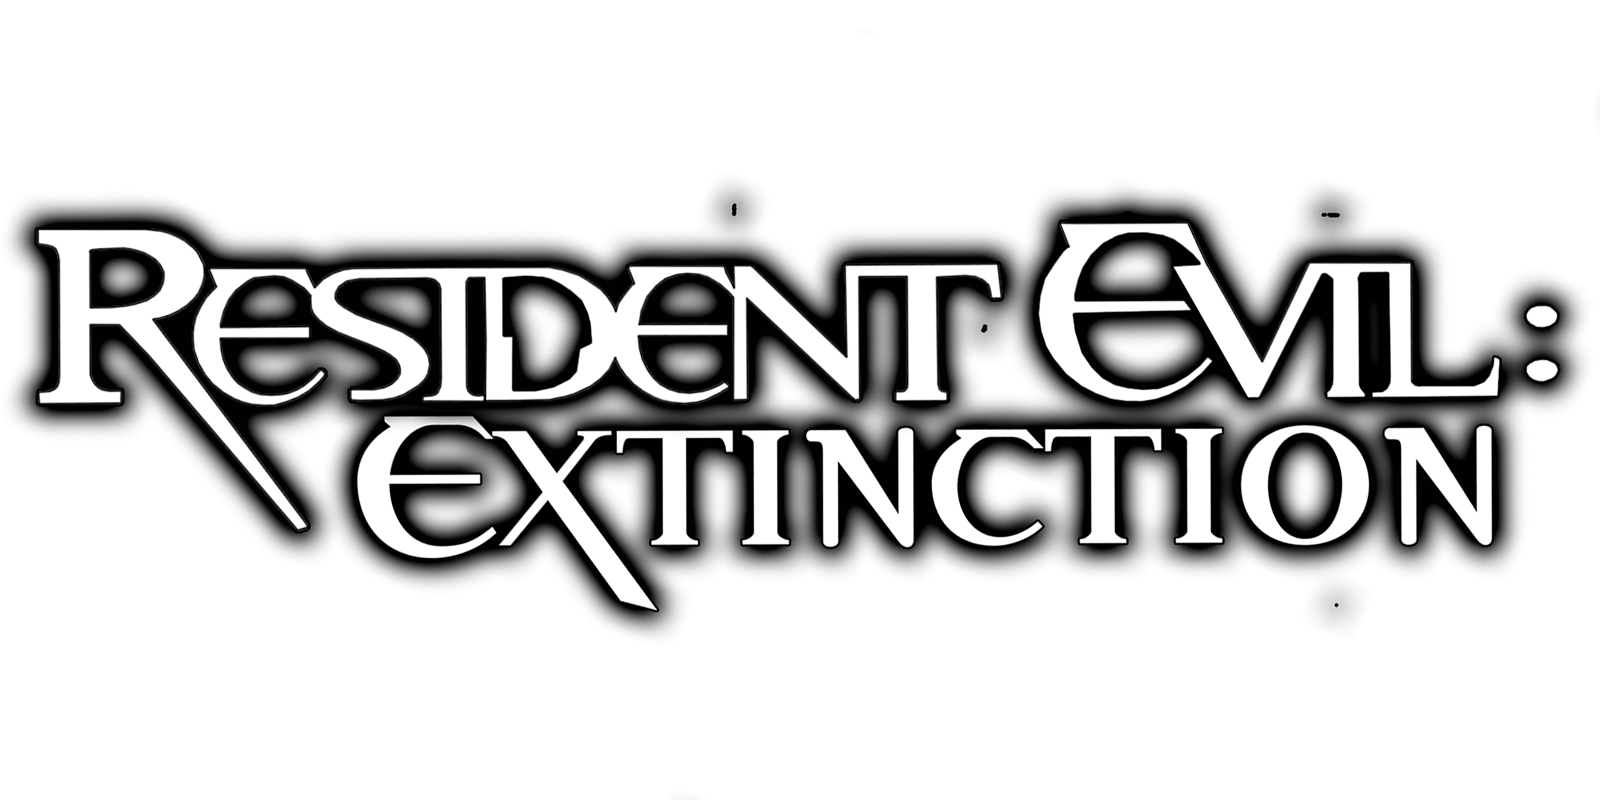 resident evil extinction full movie online free cafe